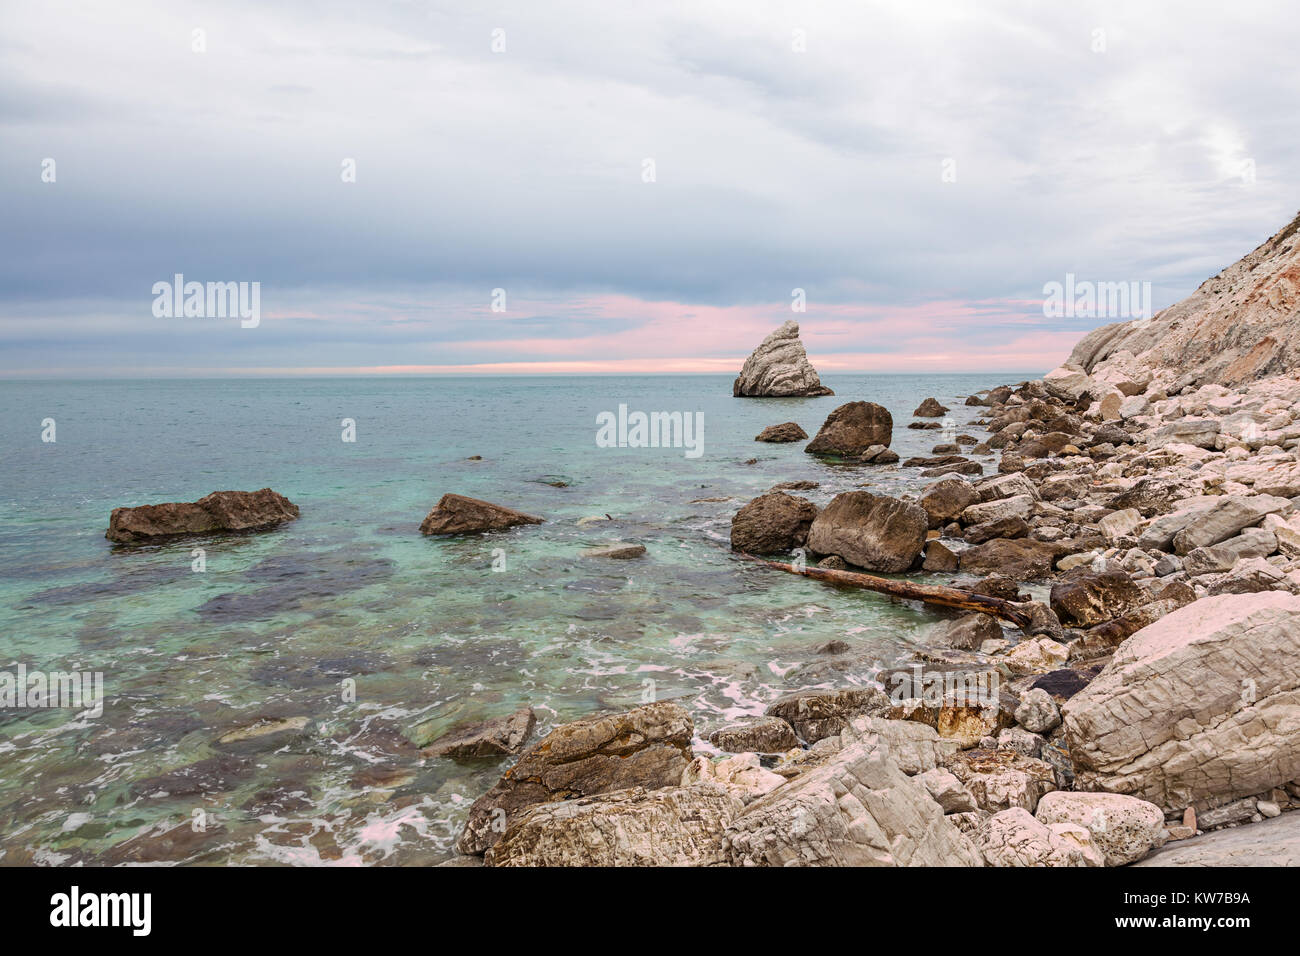 La Vela cliff in Portonovo beach, Conero Riviera, Ancona, Italy Stock Photo